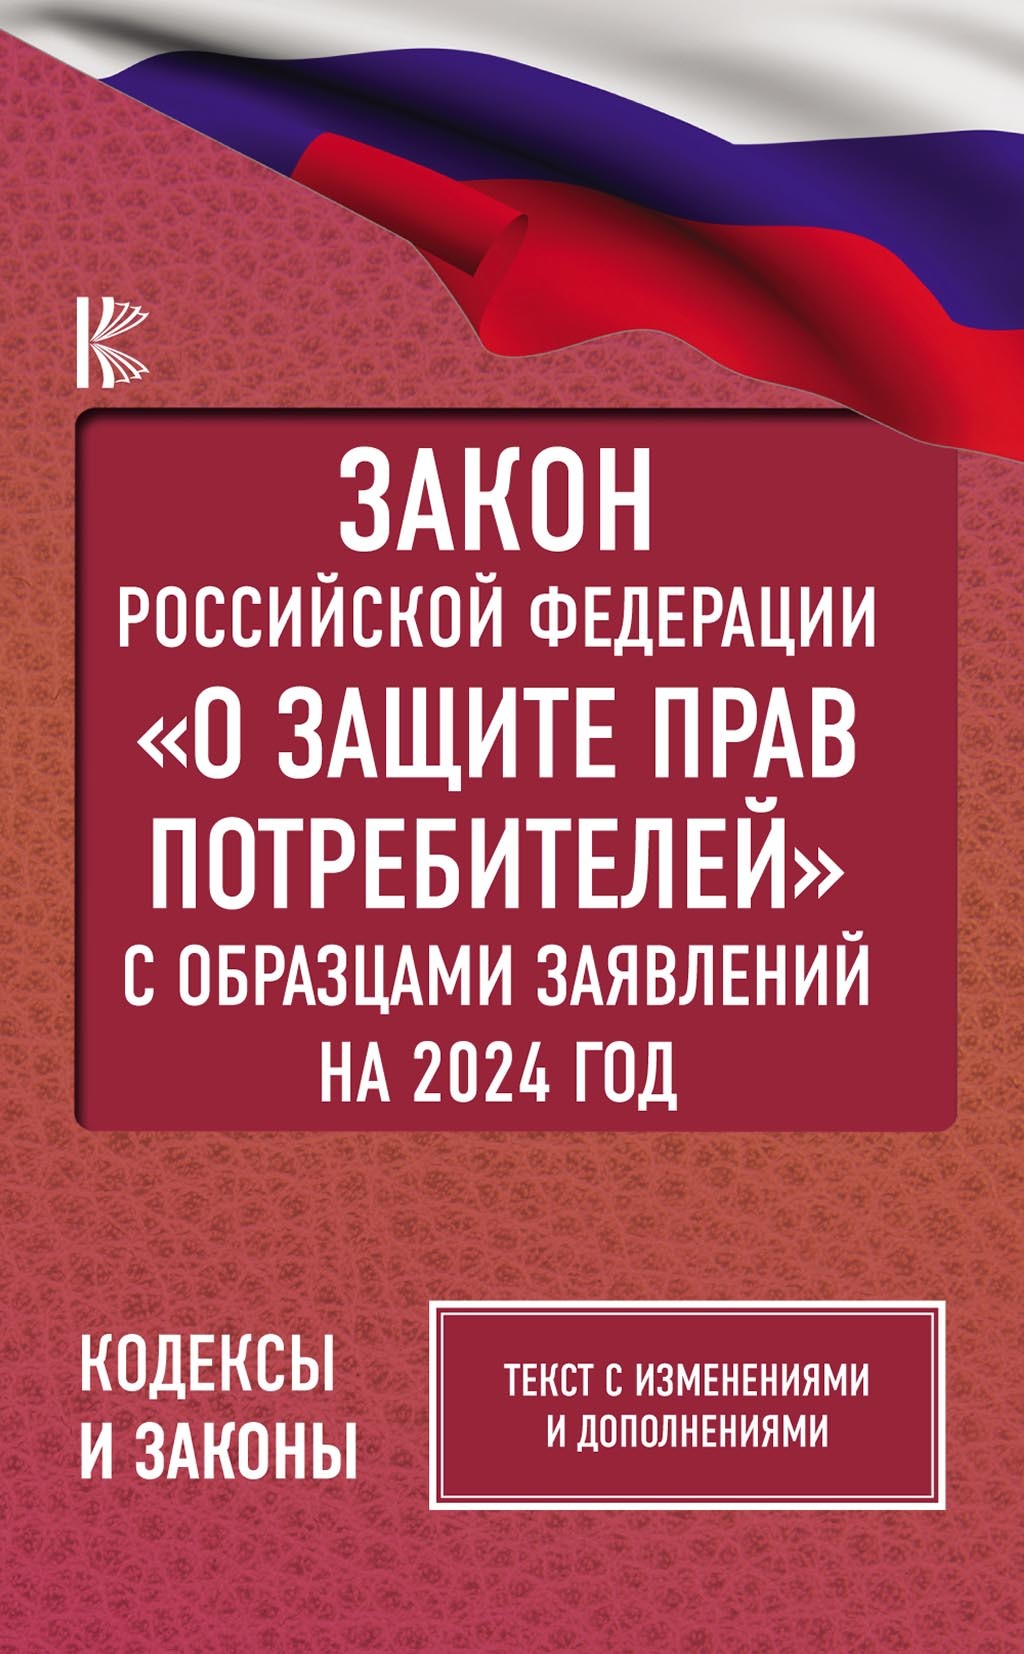 Закон Российской Федерации «О защите прав потребителей» с образцами заявлений на 1 мая 2019 года